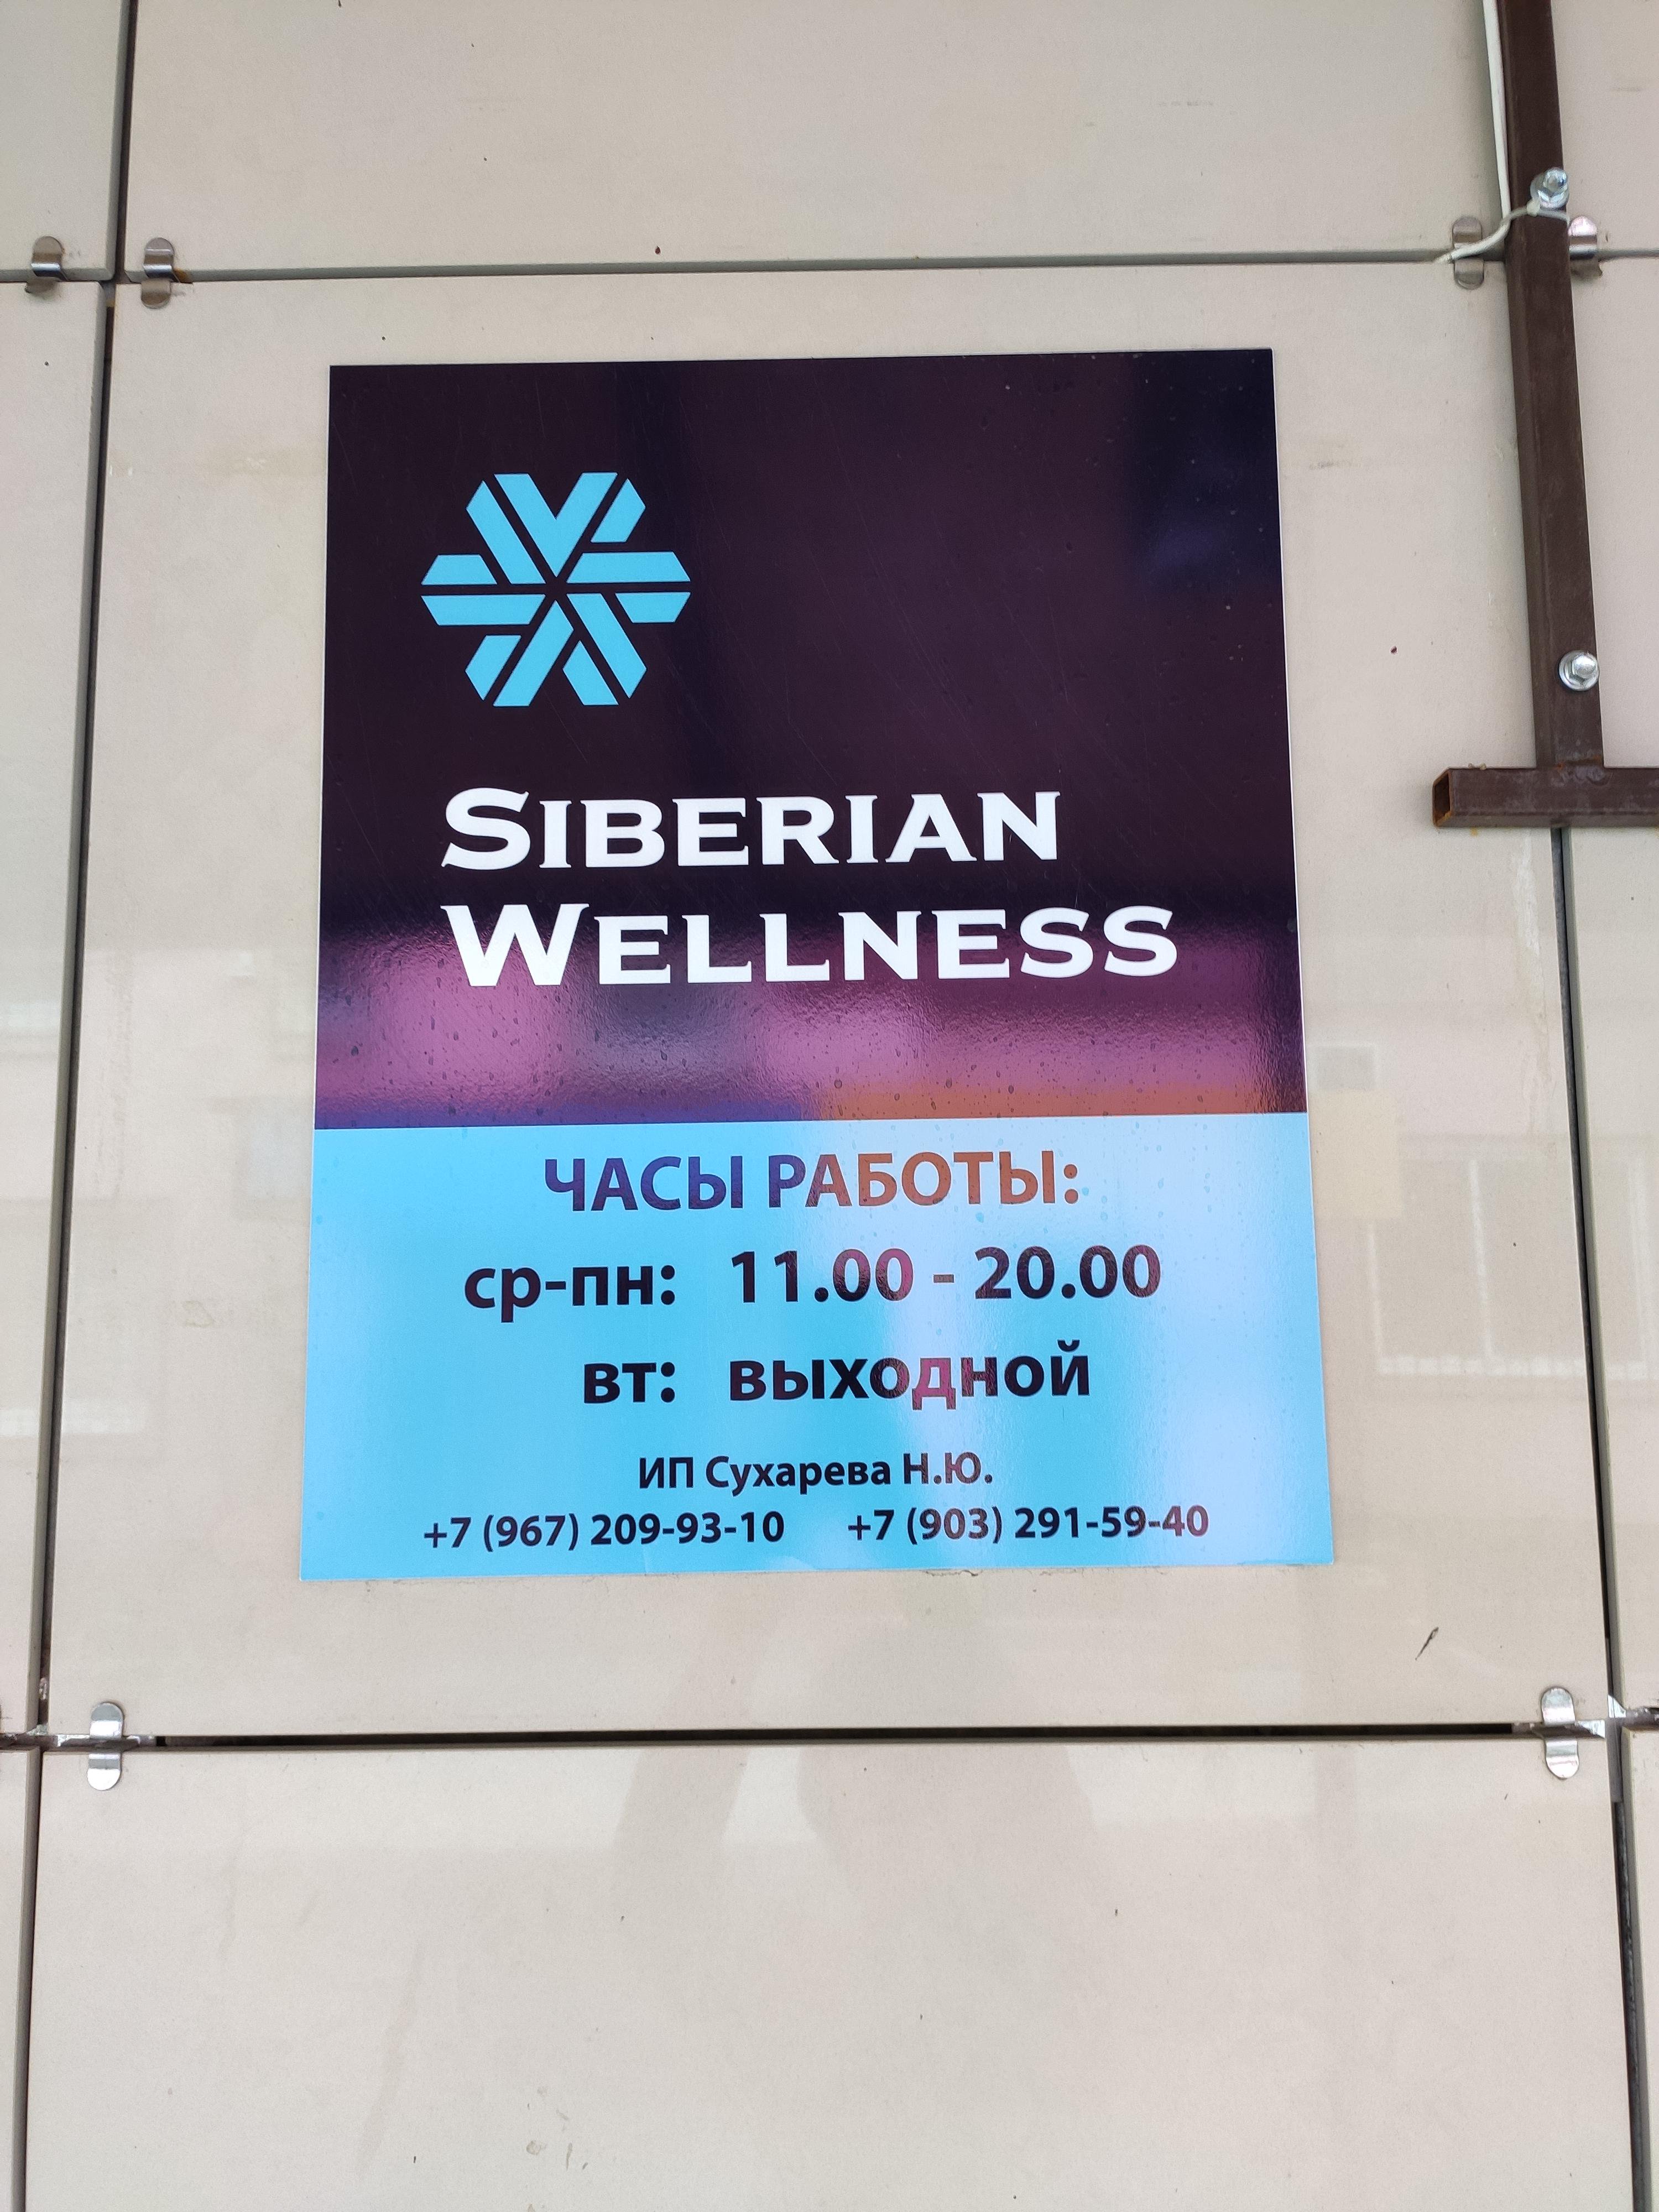 Siberian Wellness, магазин натуральной косметики, улица Побратимов, 30а, 1 этаж